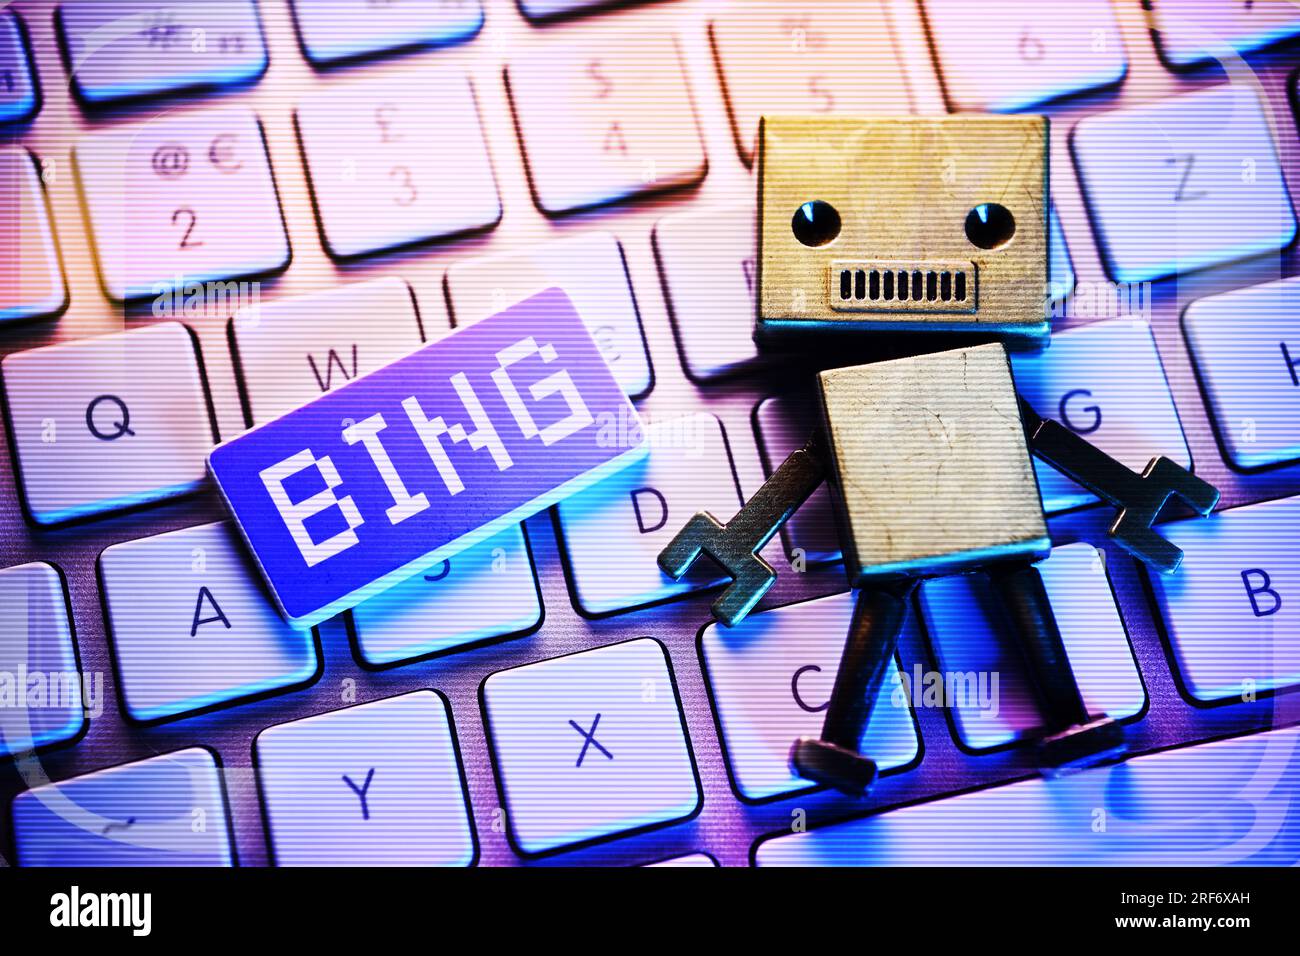 FOTOMONTAGE, Roboterfigur auf einer Computertastatur und Taste mit Aufschrift Bing, Symbolfoto für KI in der Microsaft-Suchmaschine Bing Stock Photo